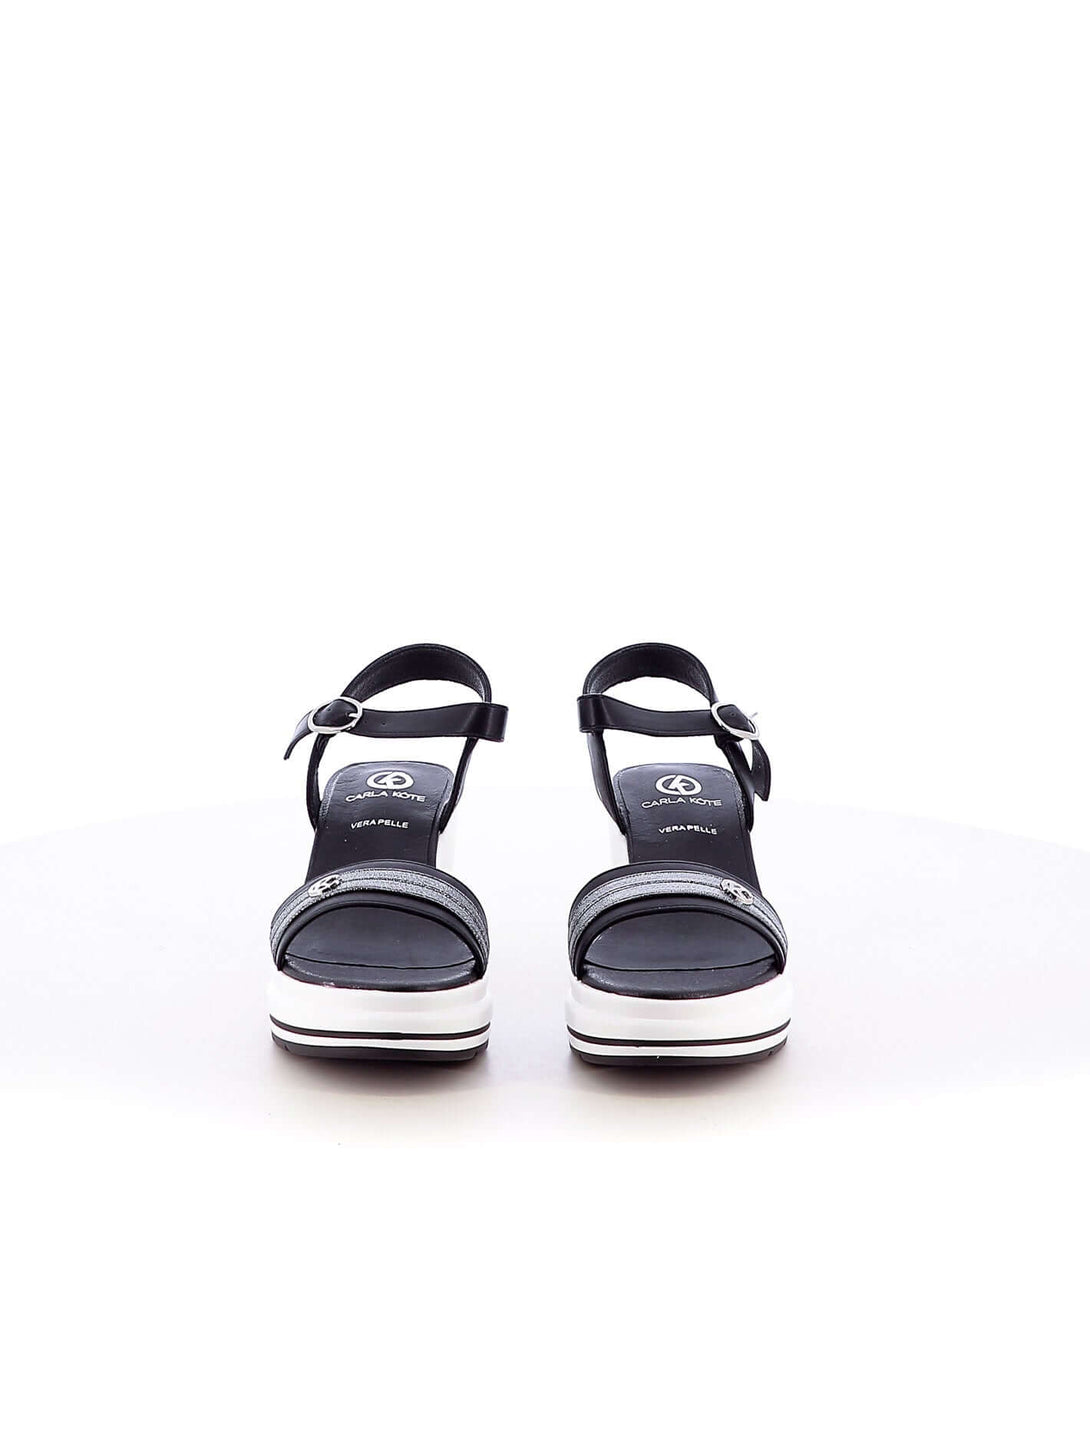 Sandali con cinturino donna CARLA KOTE X30-208K nero | Costa Superstore